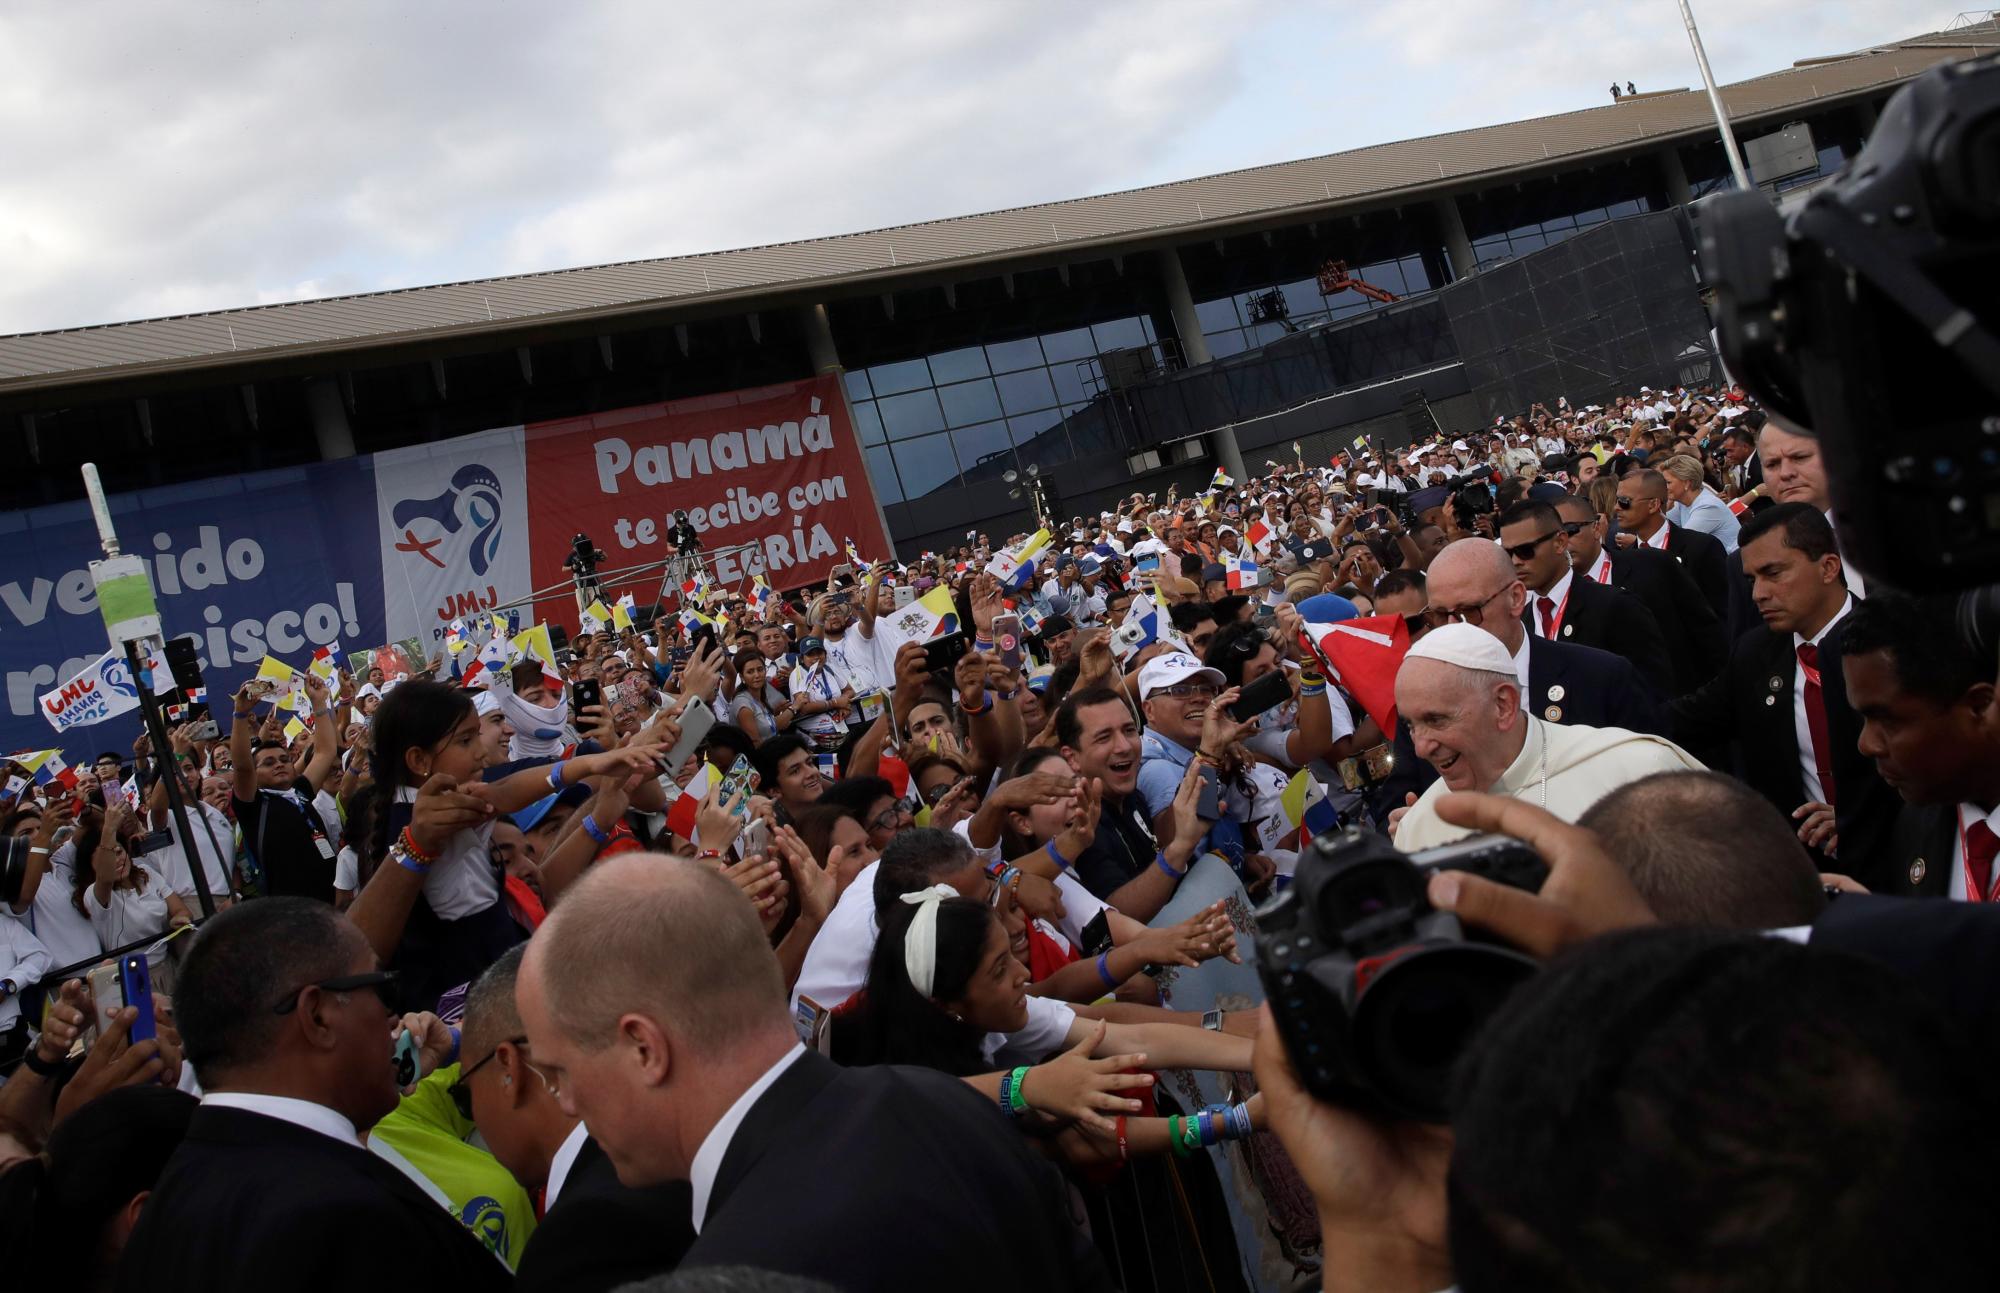 La gente saluda al Papa Francisco después de su llegada al aeropuerto internacional de Tocumén en la ciudad de Panamá, Panamá. El Papa Francisco estará en Panamá del 23 al 27 de enero para los eventos de la Jornada Mundial de la Juventud.